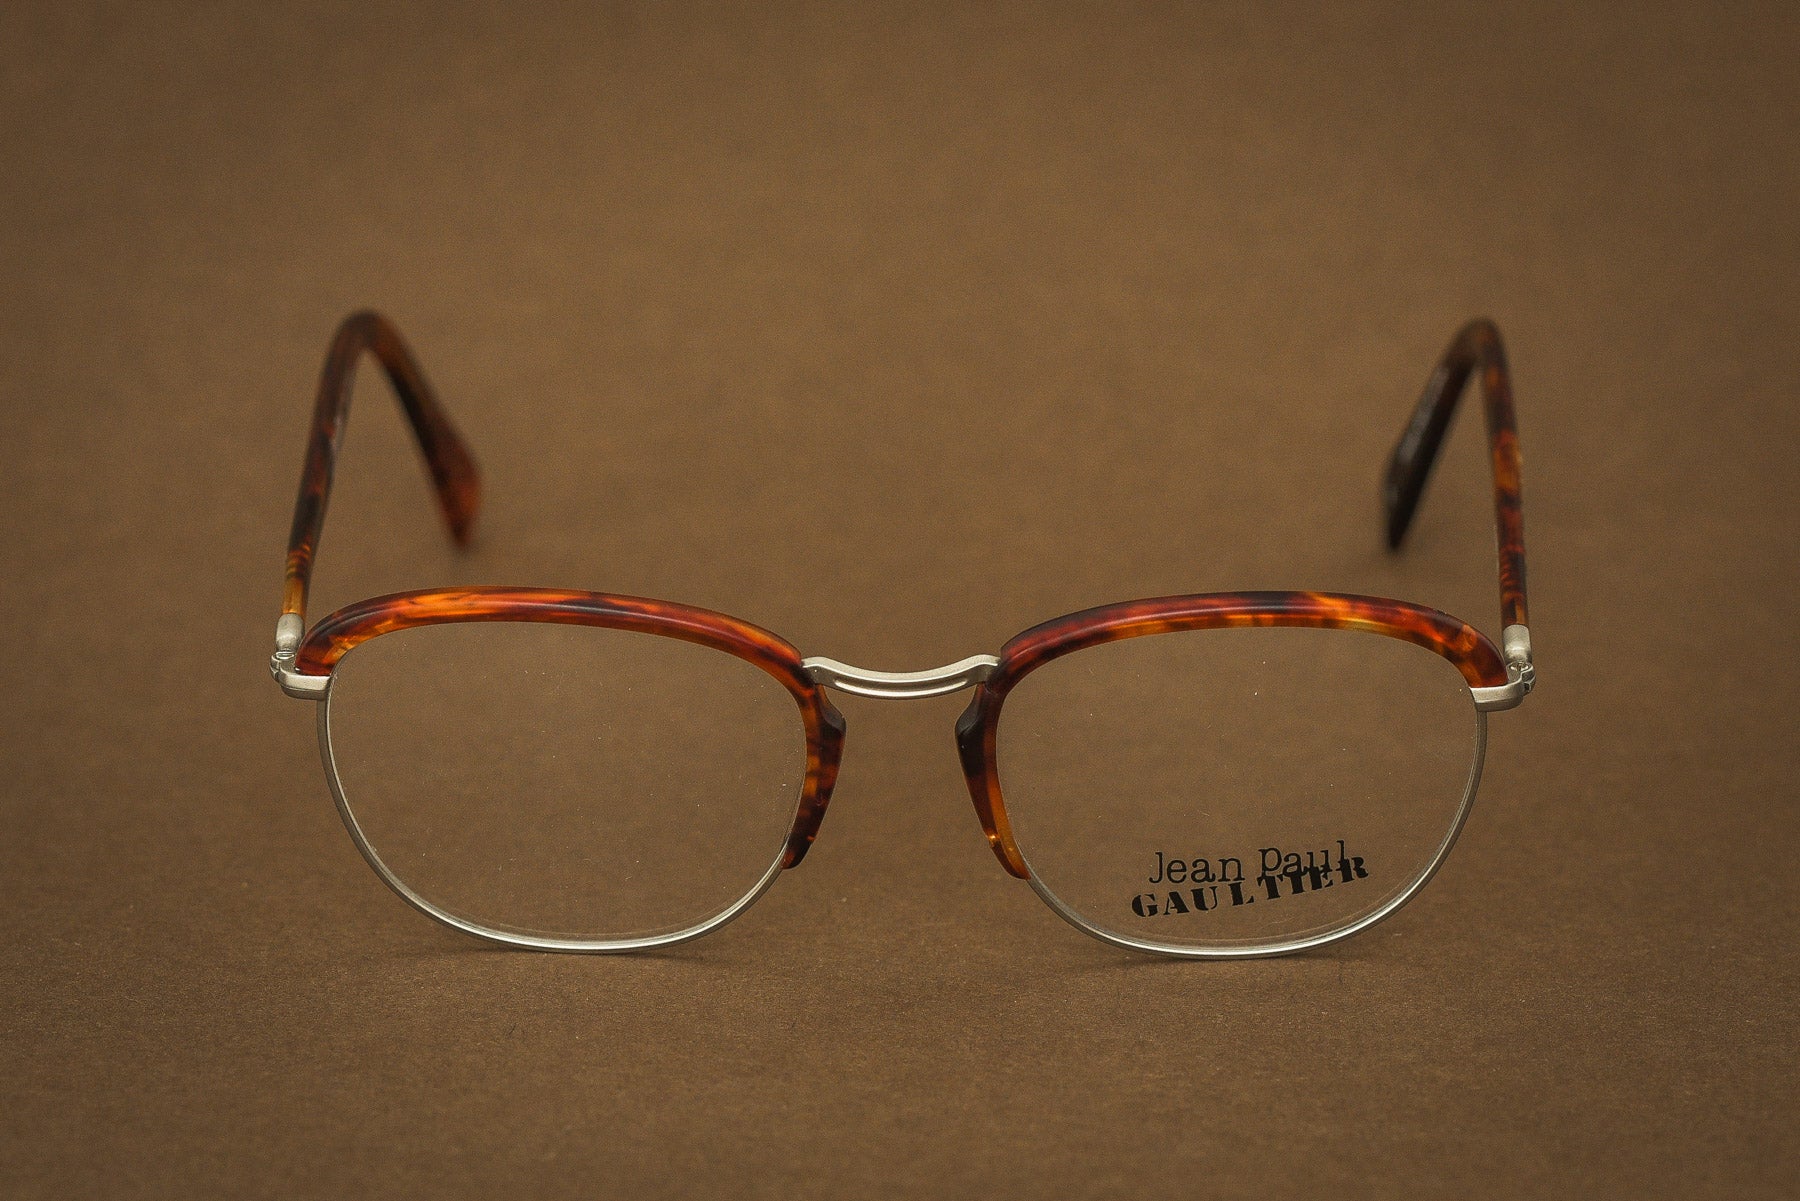 Jean Paul Gaultier 55 1273 glasses